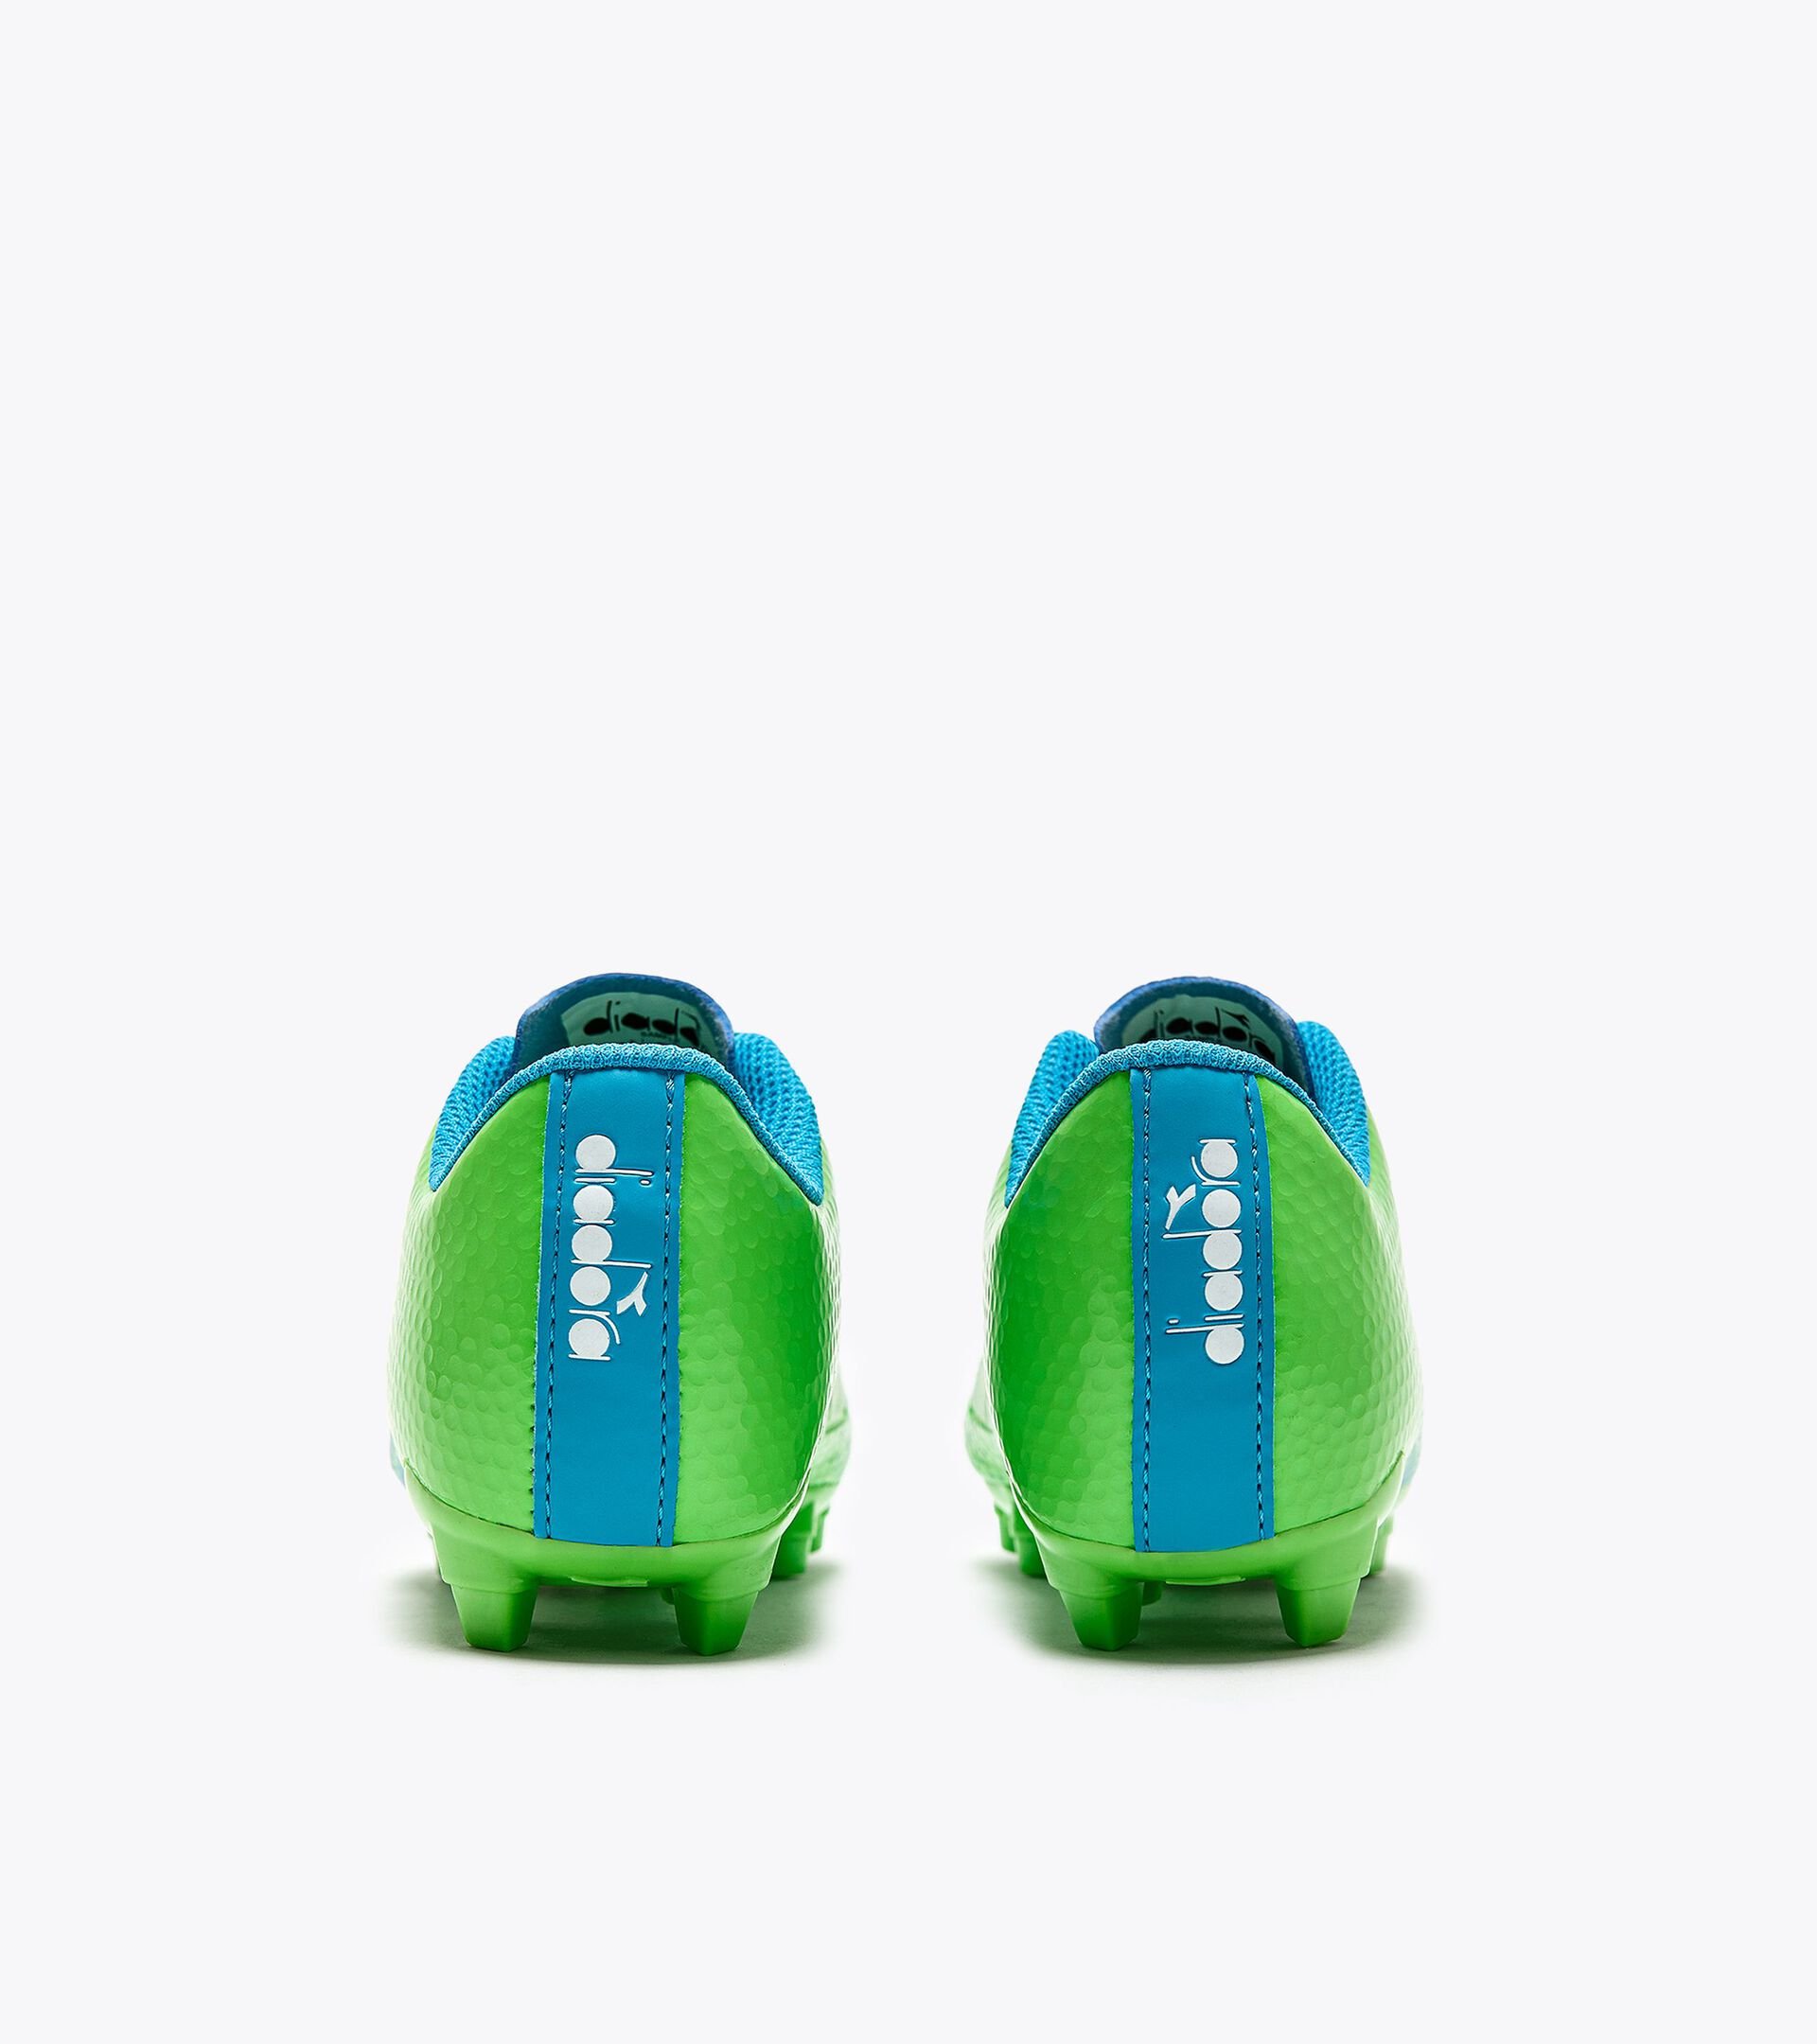 Calcio boots for firm grounds - Junior CATTURA GR LPU JR GREEN FL/WHT/BLUE FL - Diadora